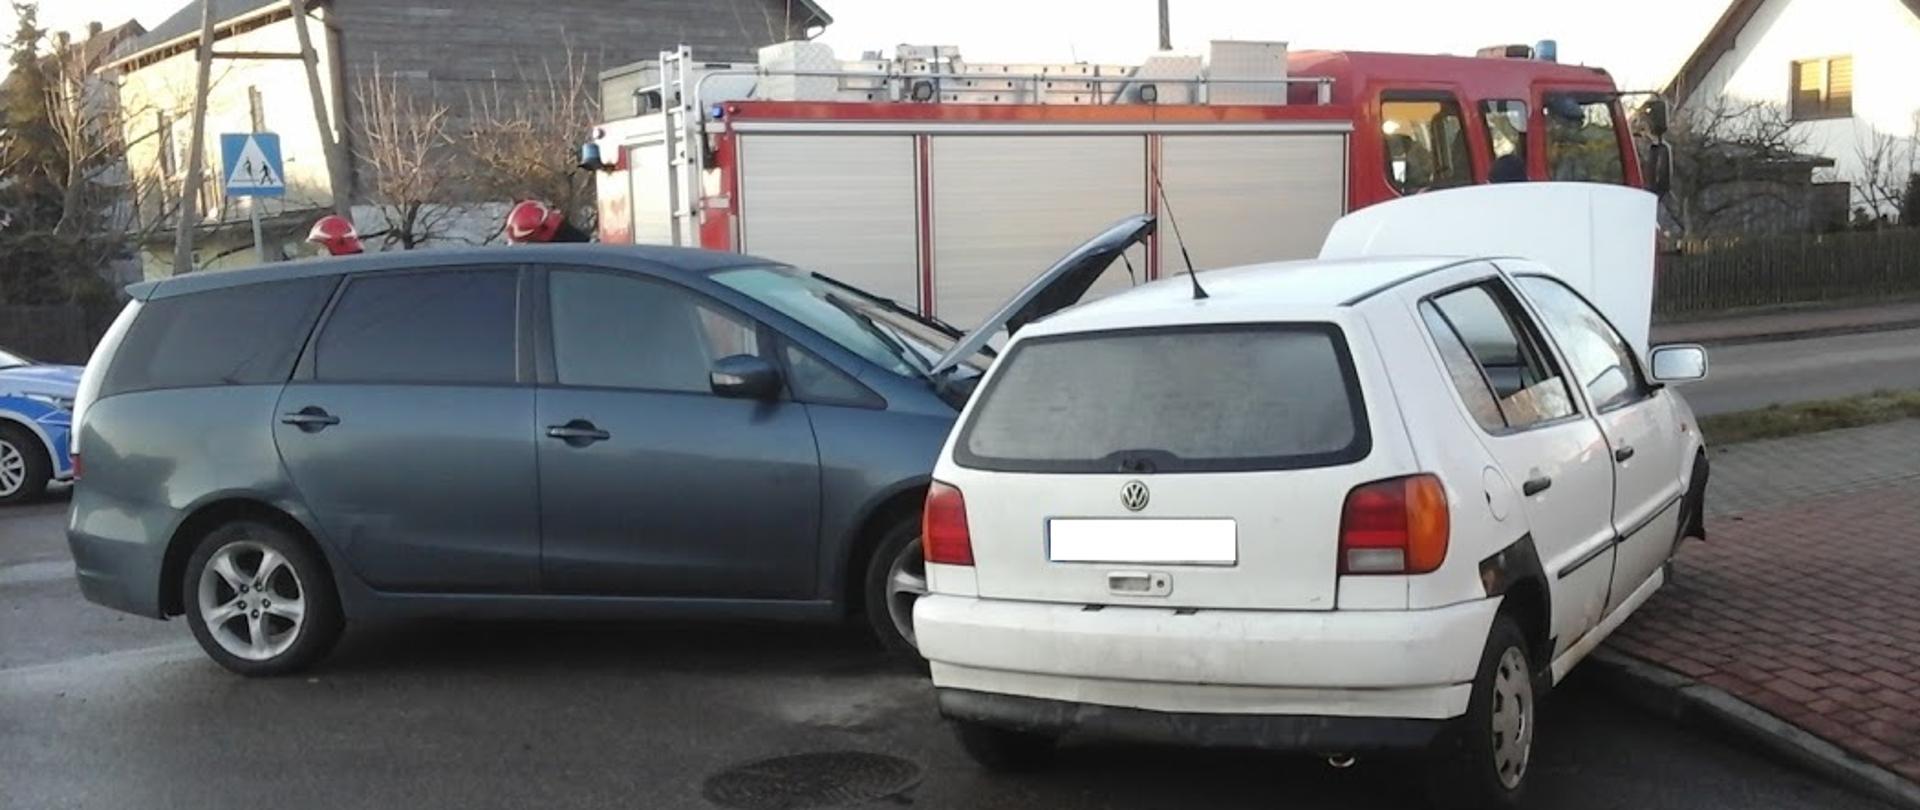 Na zdjęciu widać rozbity dwa samochody .biały samochód osobowy znajdujący się na chodniku. W oddali wóz ratownictwa technicznego 